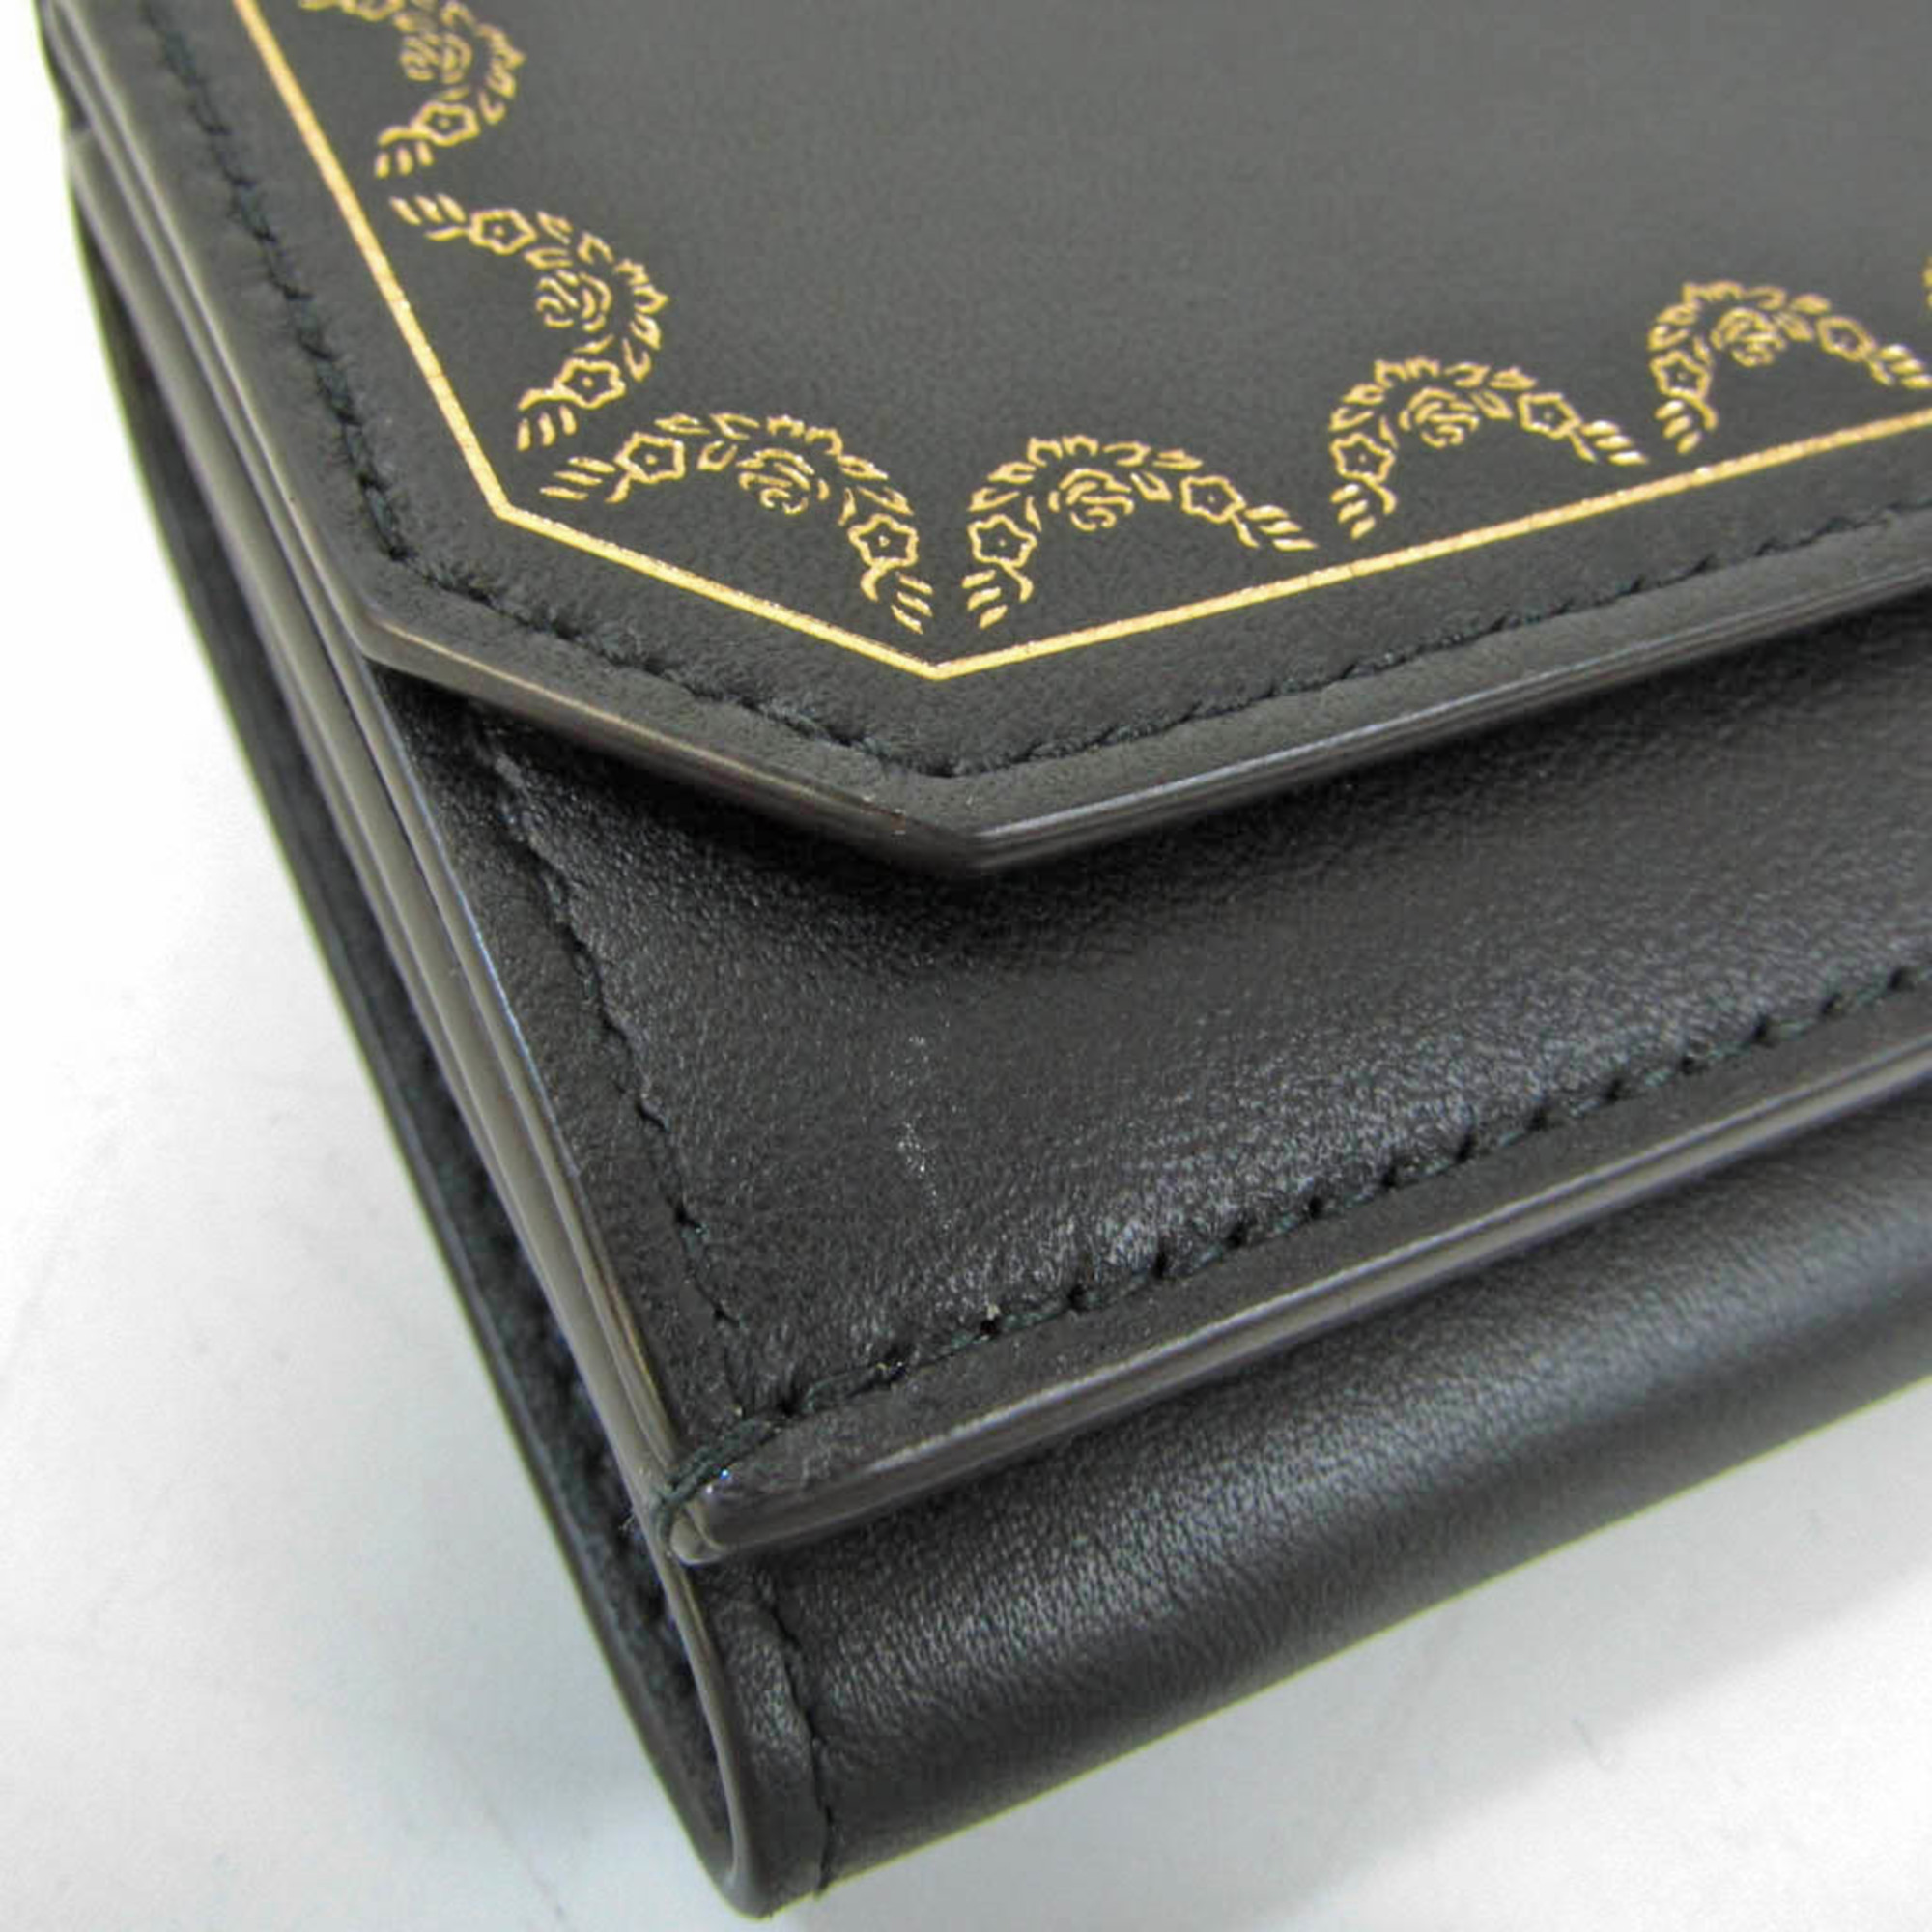 Cartier Garland De Cartier Mini Multi-wallet L3001712 Women's Leather Wallet (tri-fold) Black